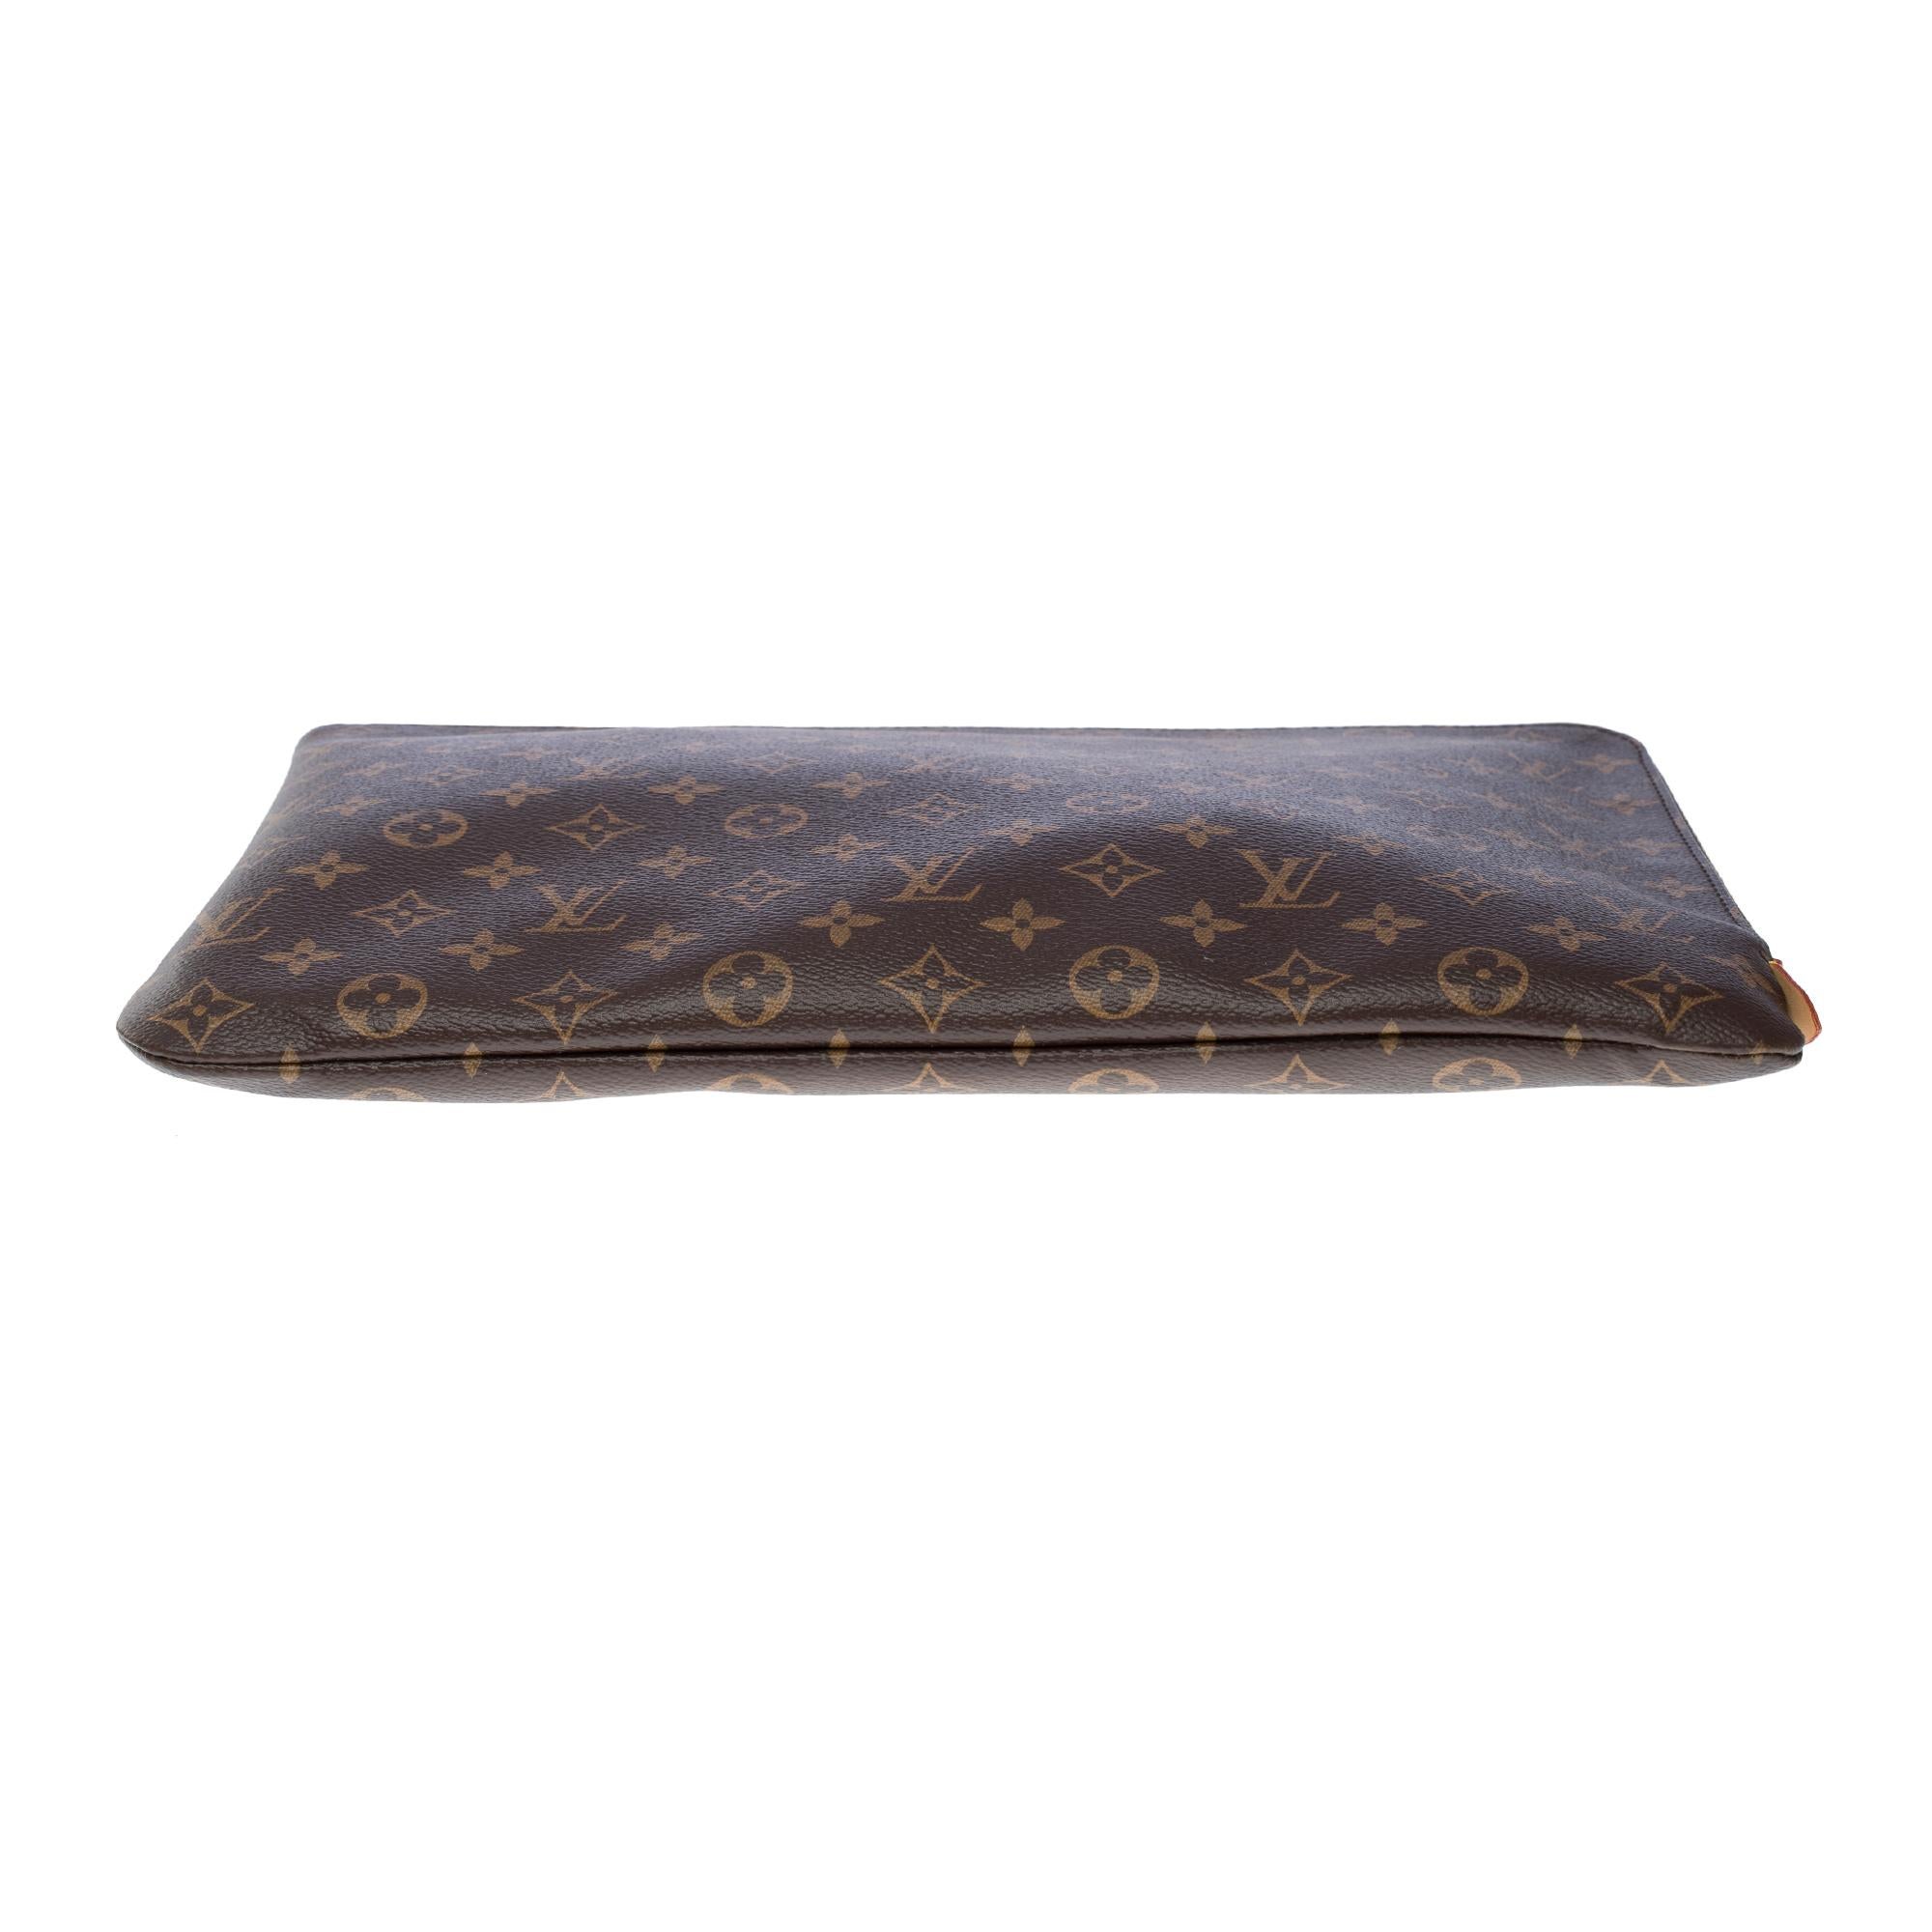 New Louis Vuitton Travel Briefcase in brown monogram canvas, GHW 6